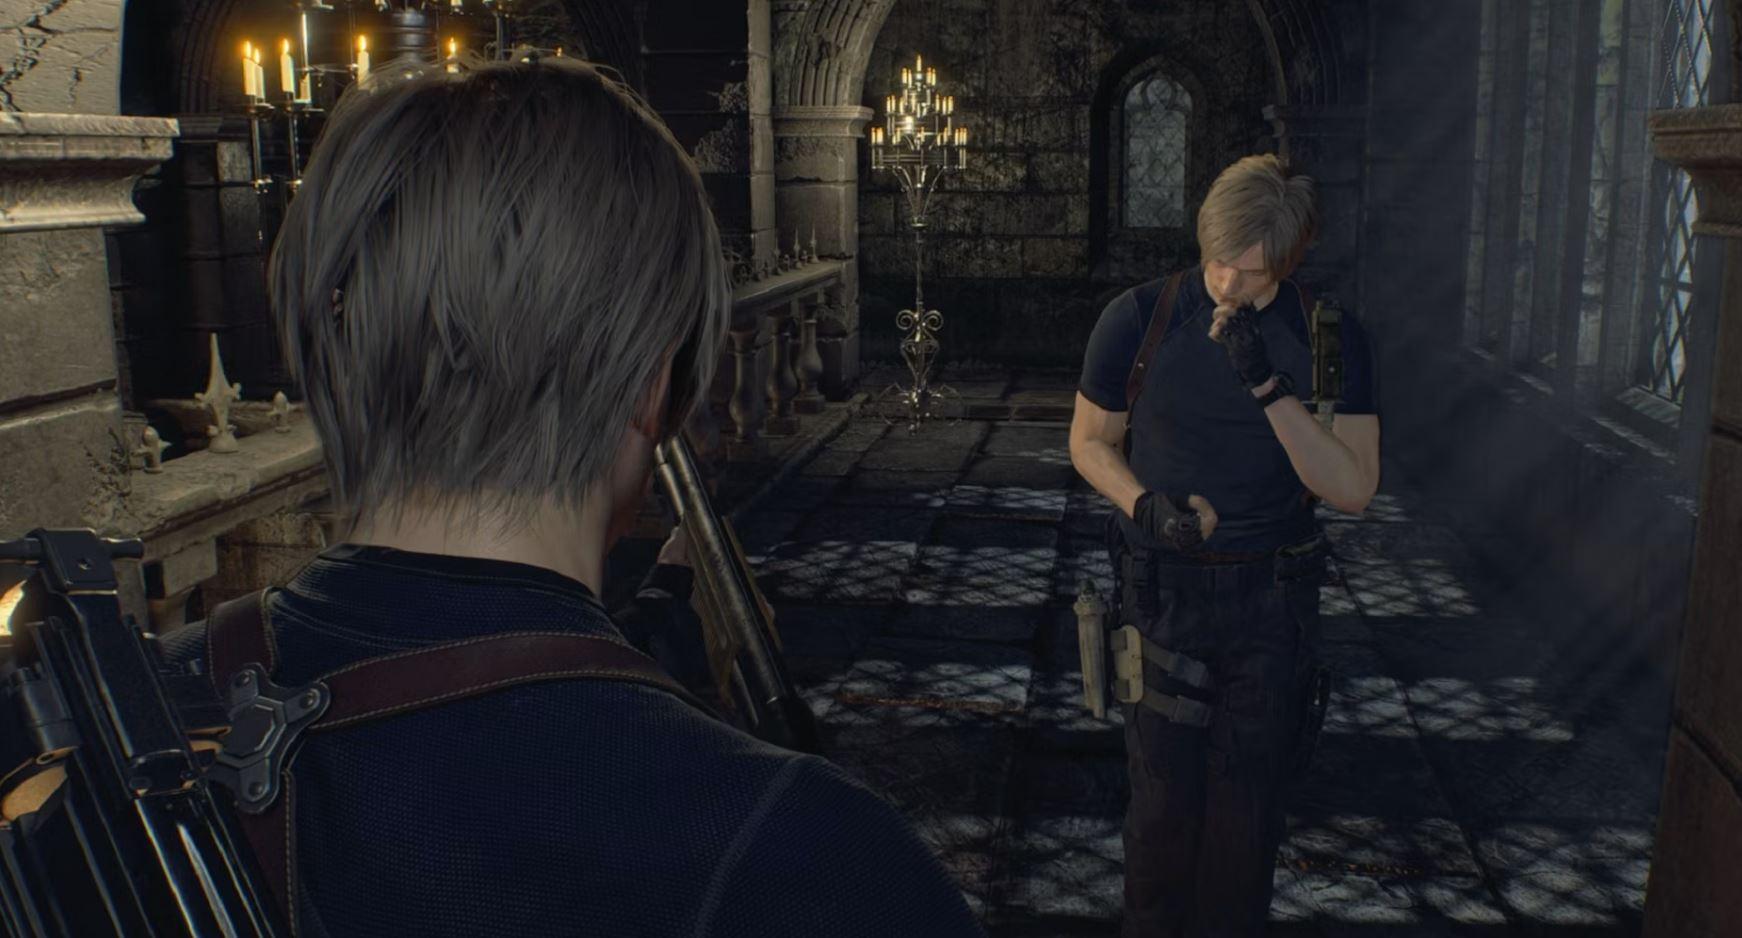 Resident Evil 4 Remake leon ashley mod arabgamerz عرب جيمرز تعديل ليون اشلي ريزدنت ايفل 4